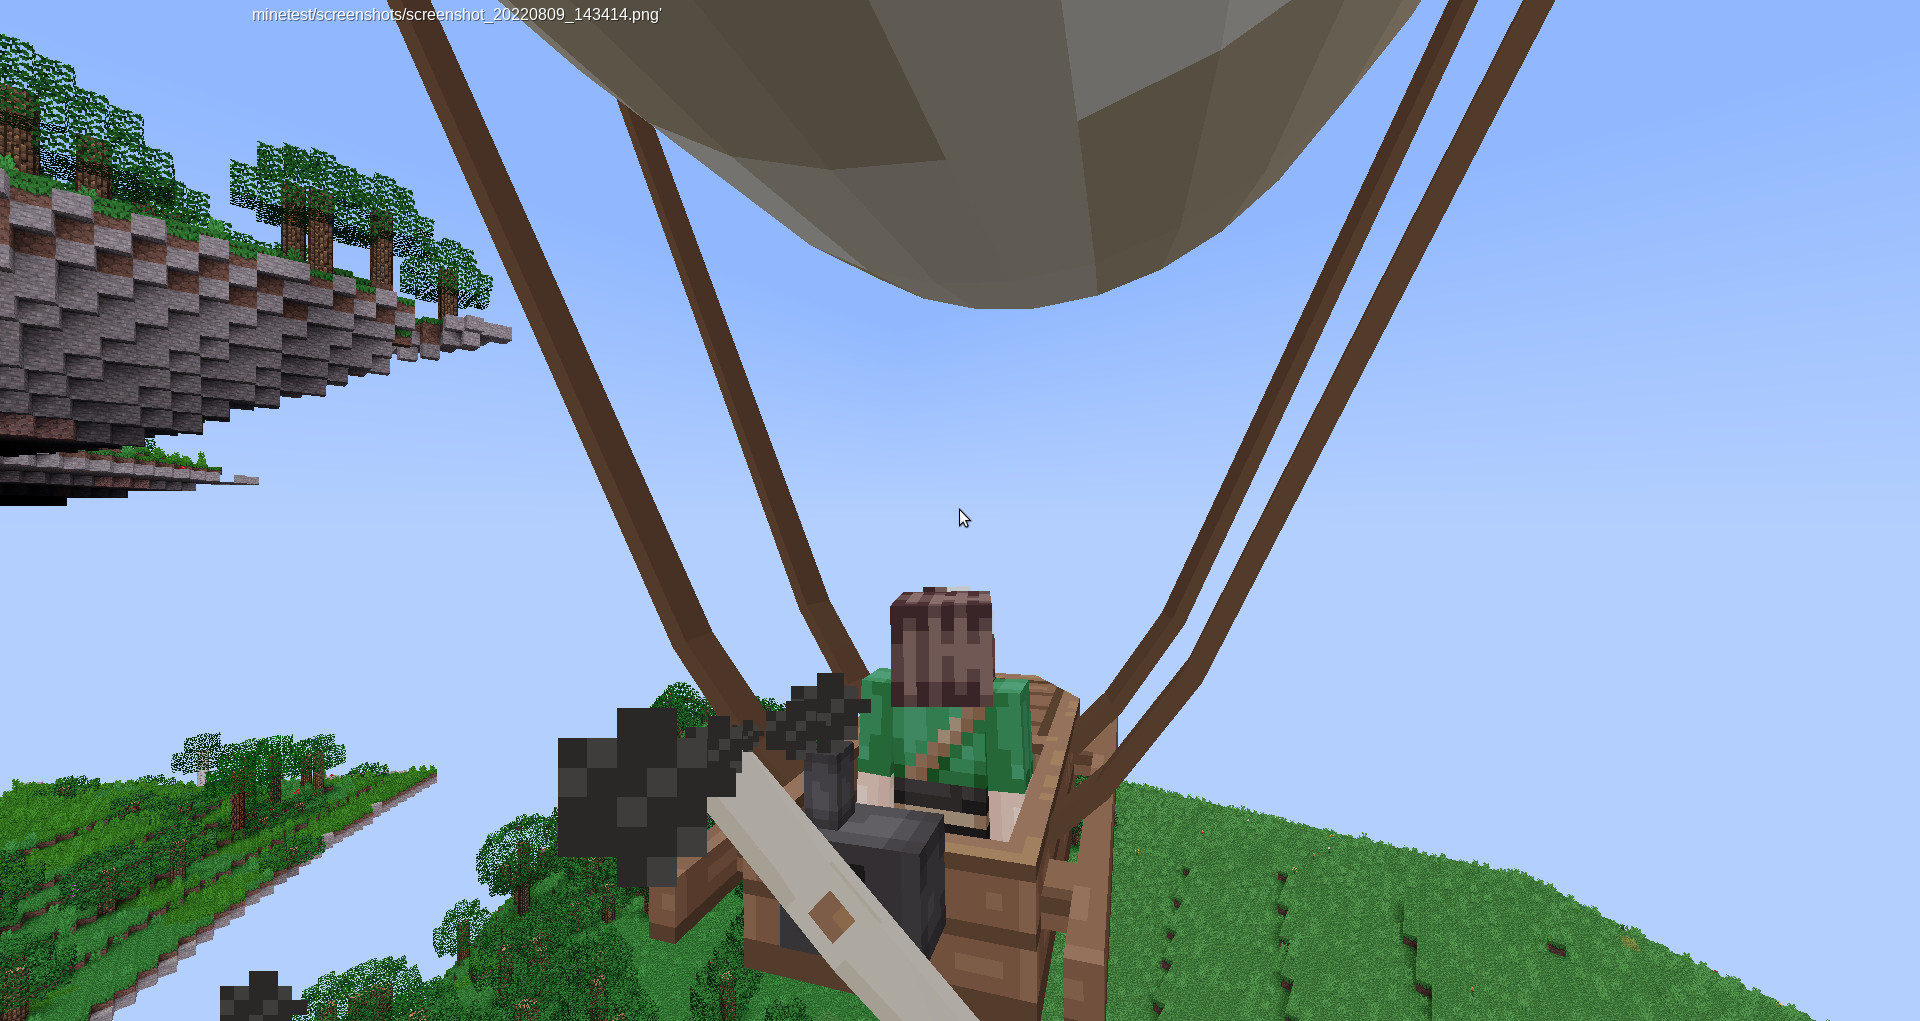 Riding the airship